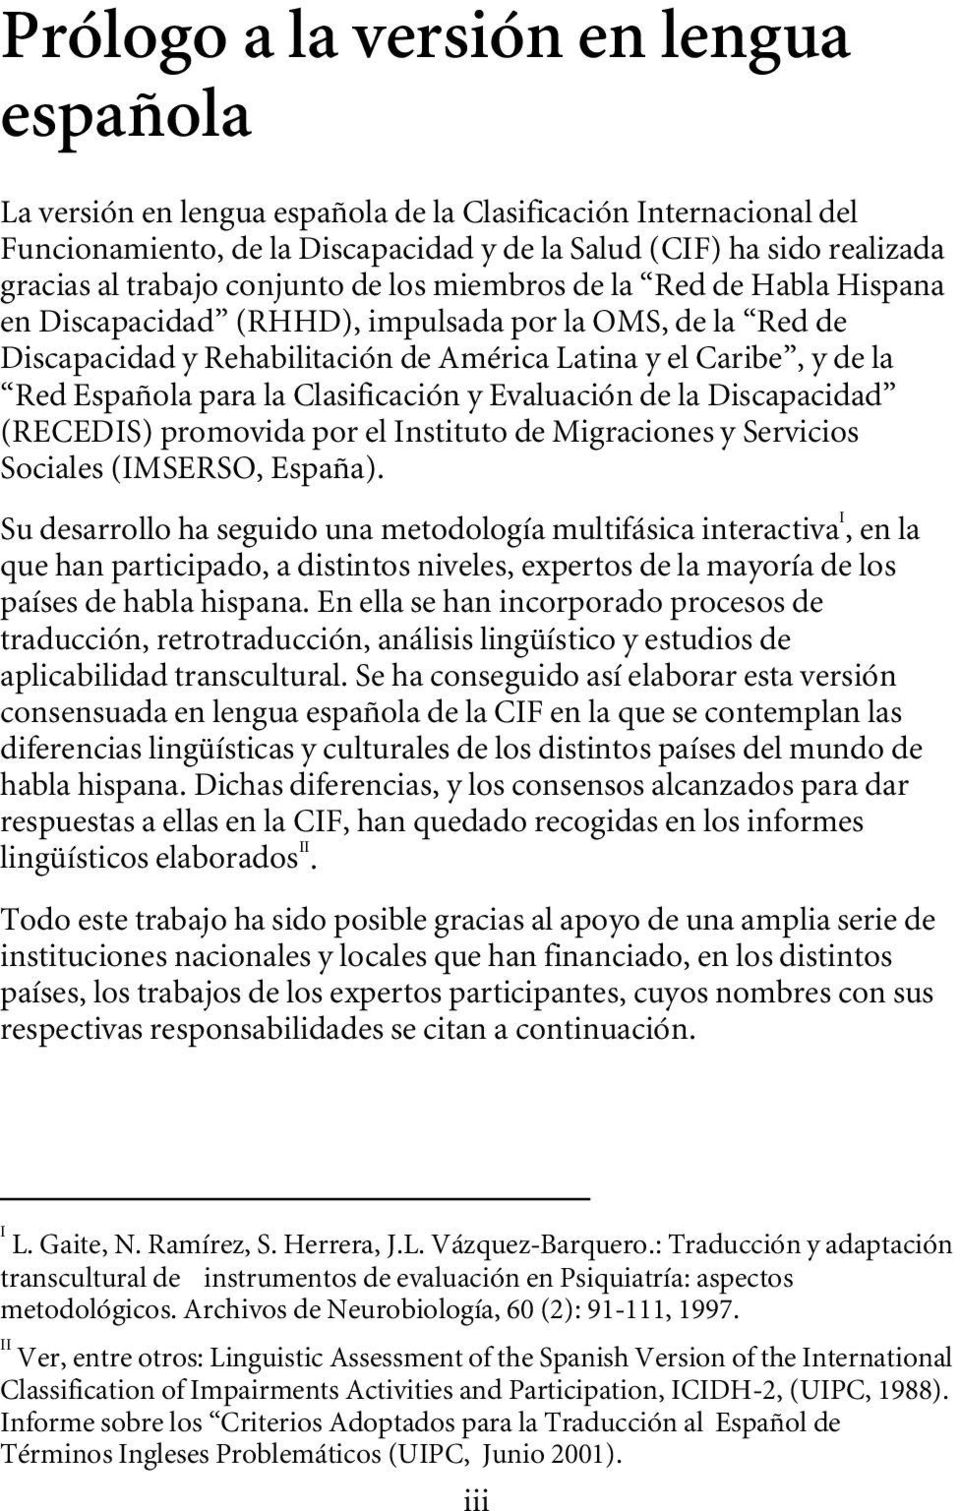 la Clasificación y Evaluación de la Discapacidad (RECEDIS) promovida por el Instituto de Migraciones y Servicios Sociales (IMSERSO, España).